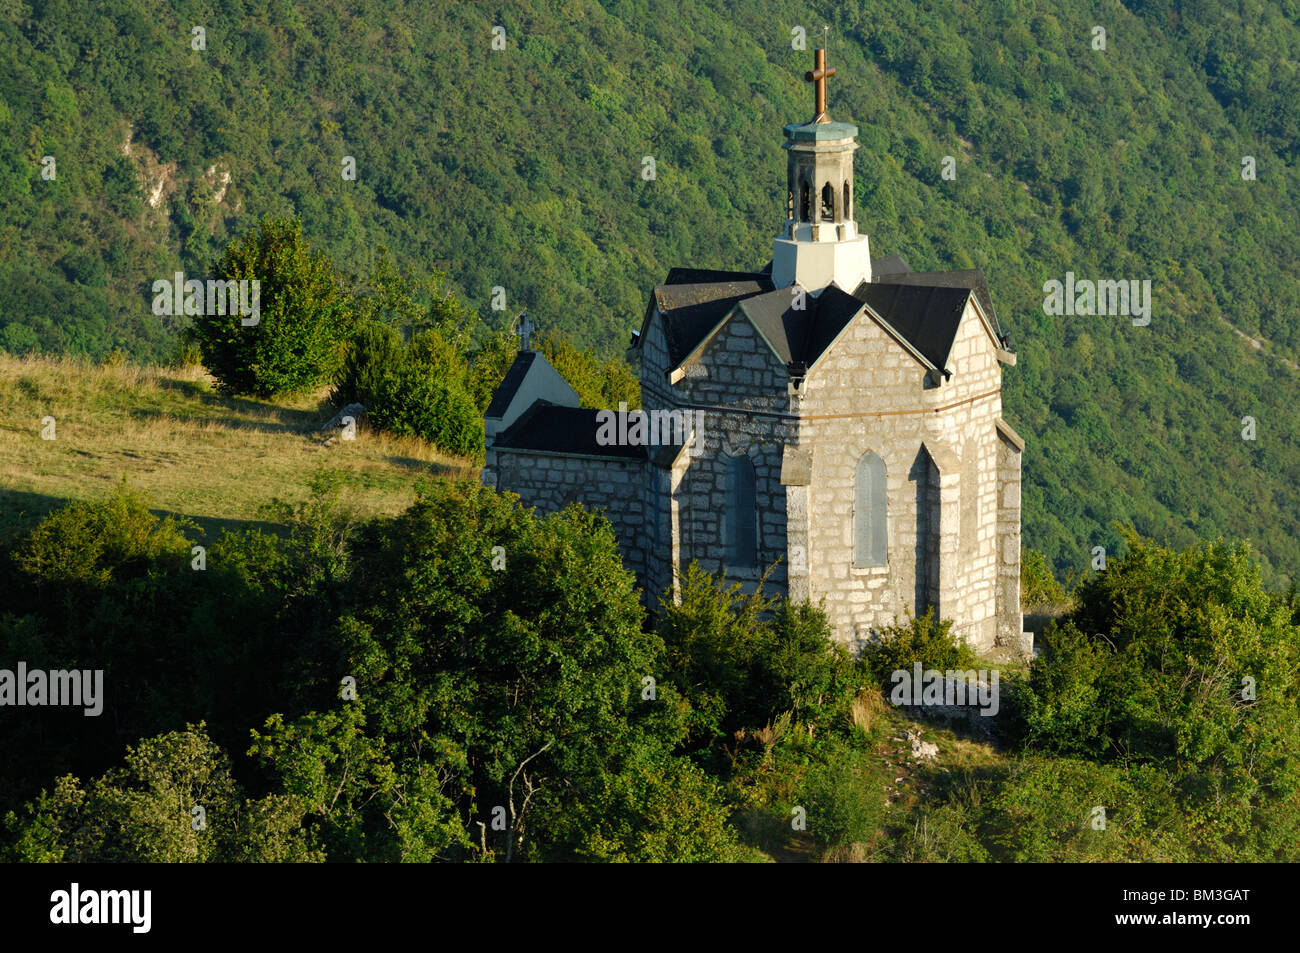 Vue aérienne de la chapelle St Michel. Challes-les-eaux. Savoie (Savoie), région Rhône-Alpes, Alpes, France Banque D'Images